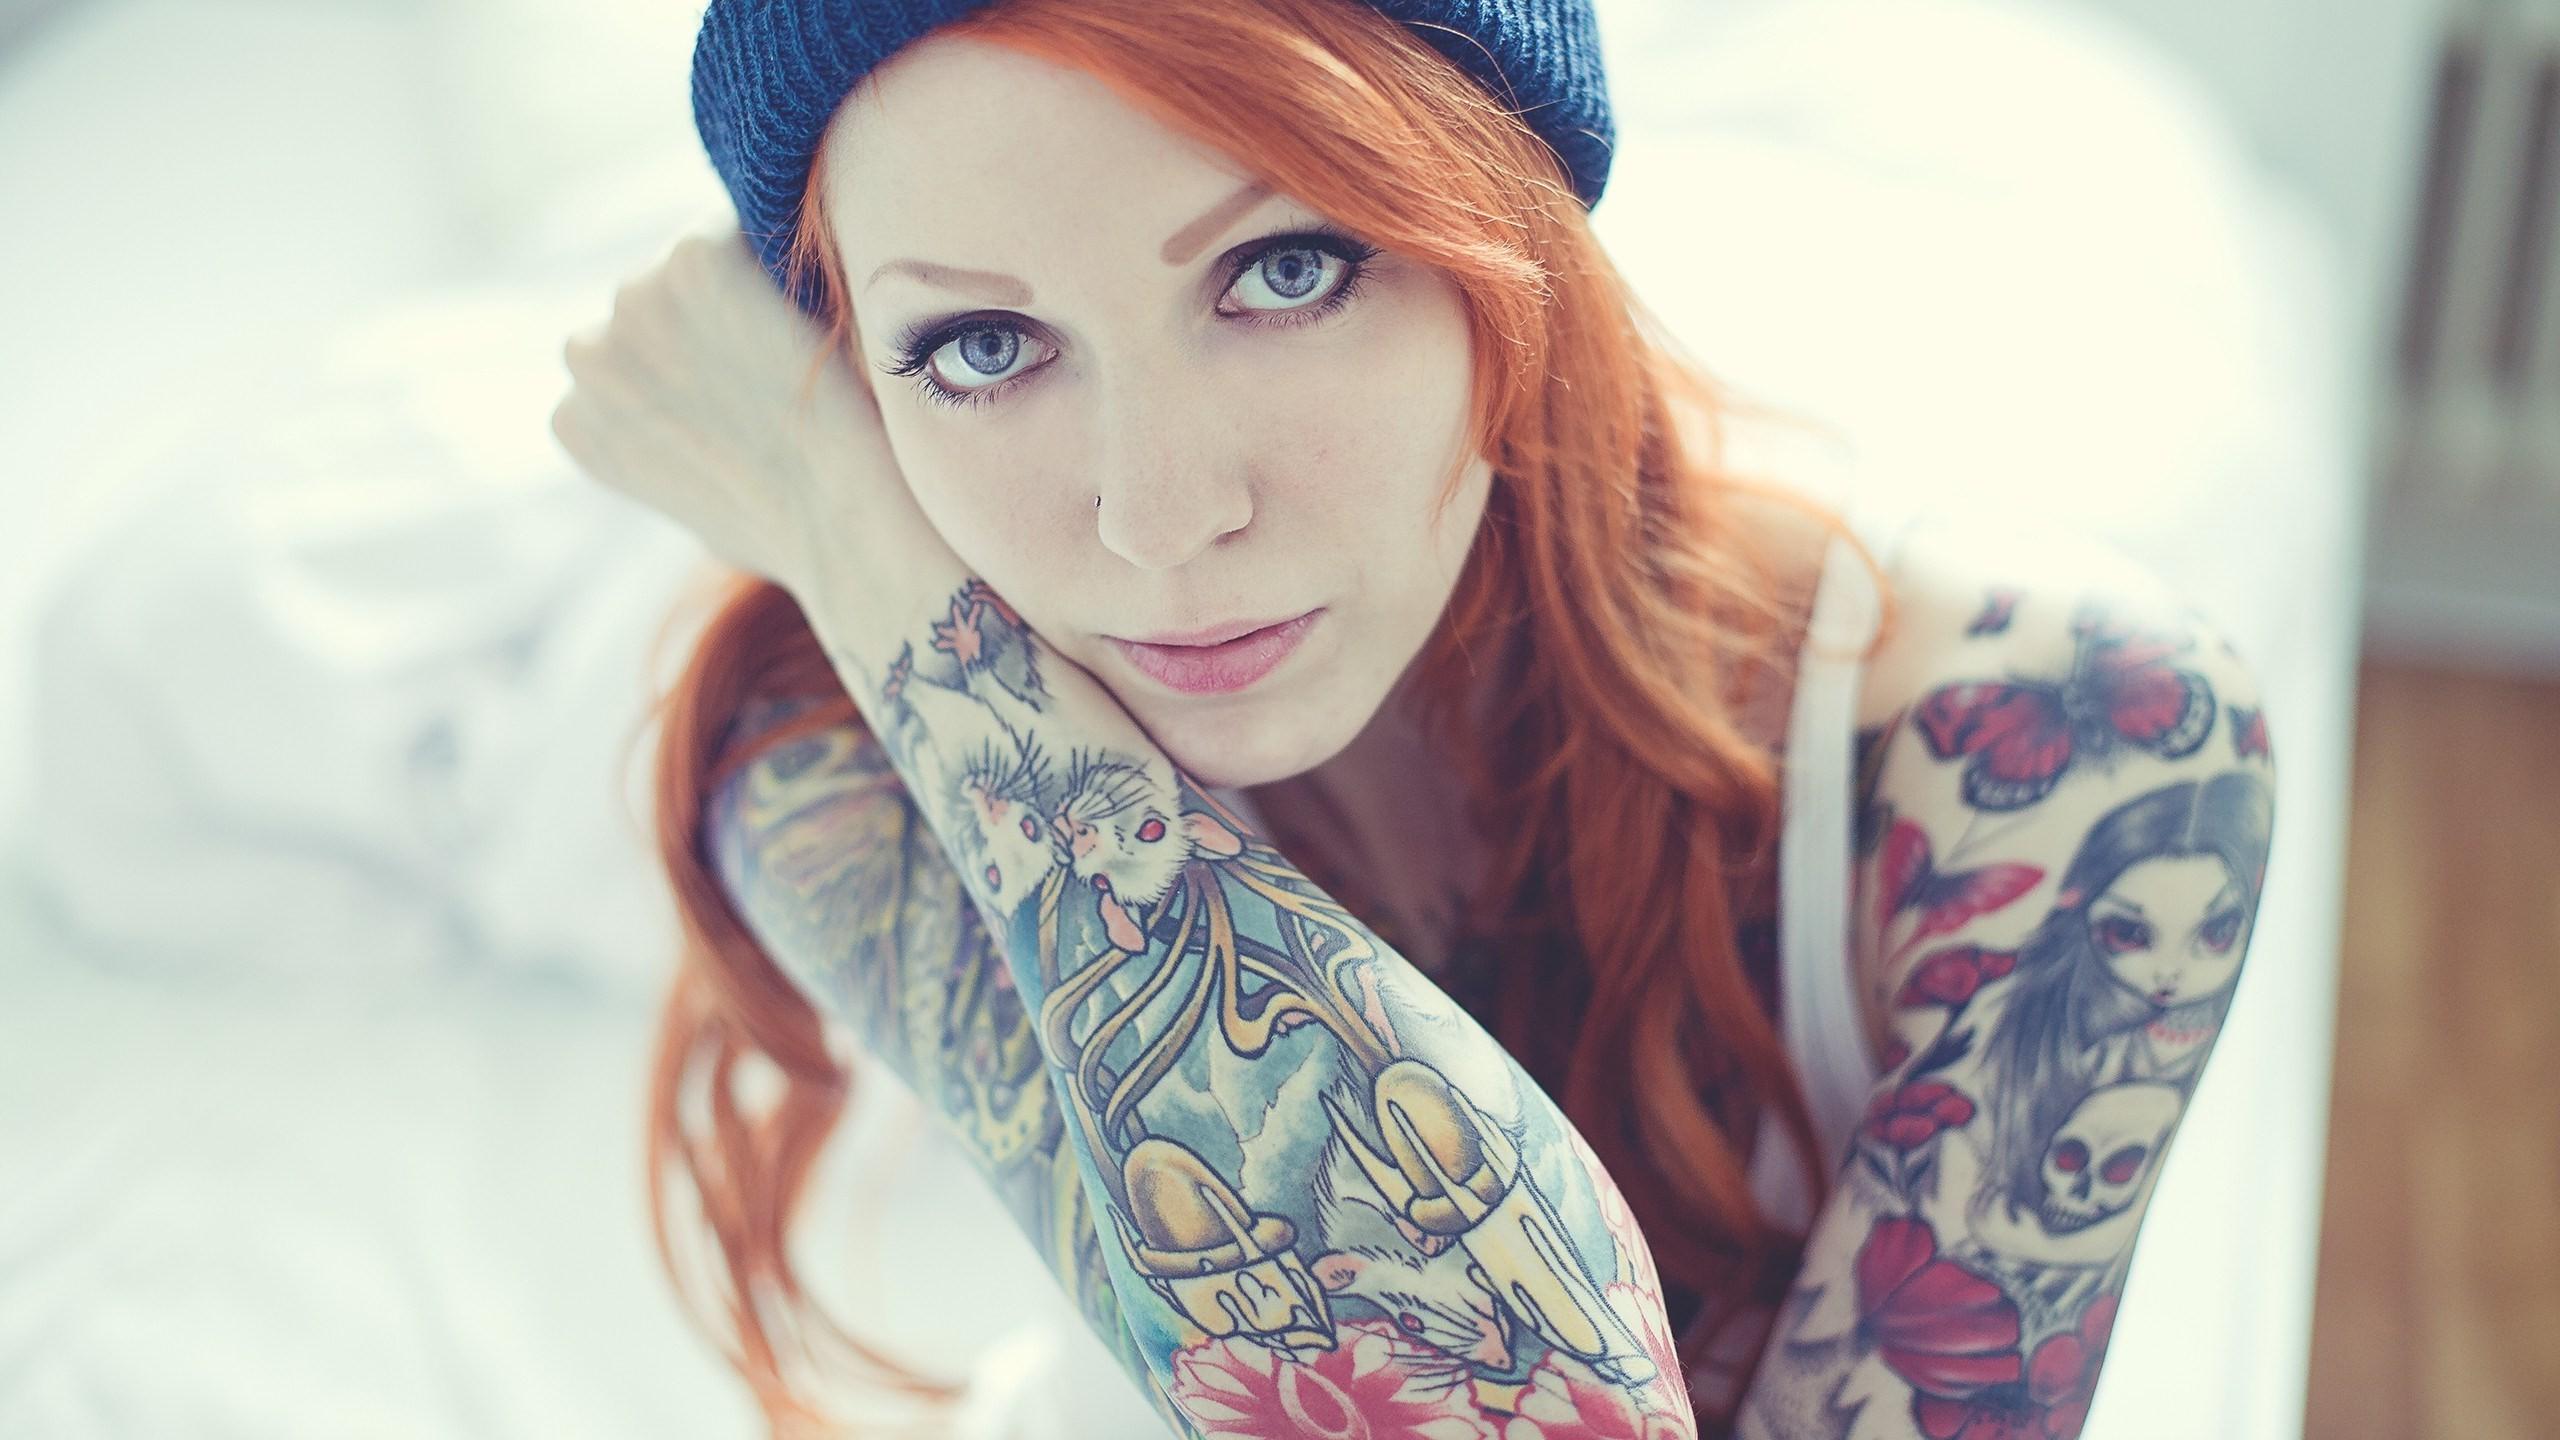 Girls Woman Tattoo Tattooed redhead HD Wallpapers, Desktop ...